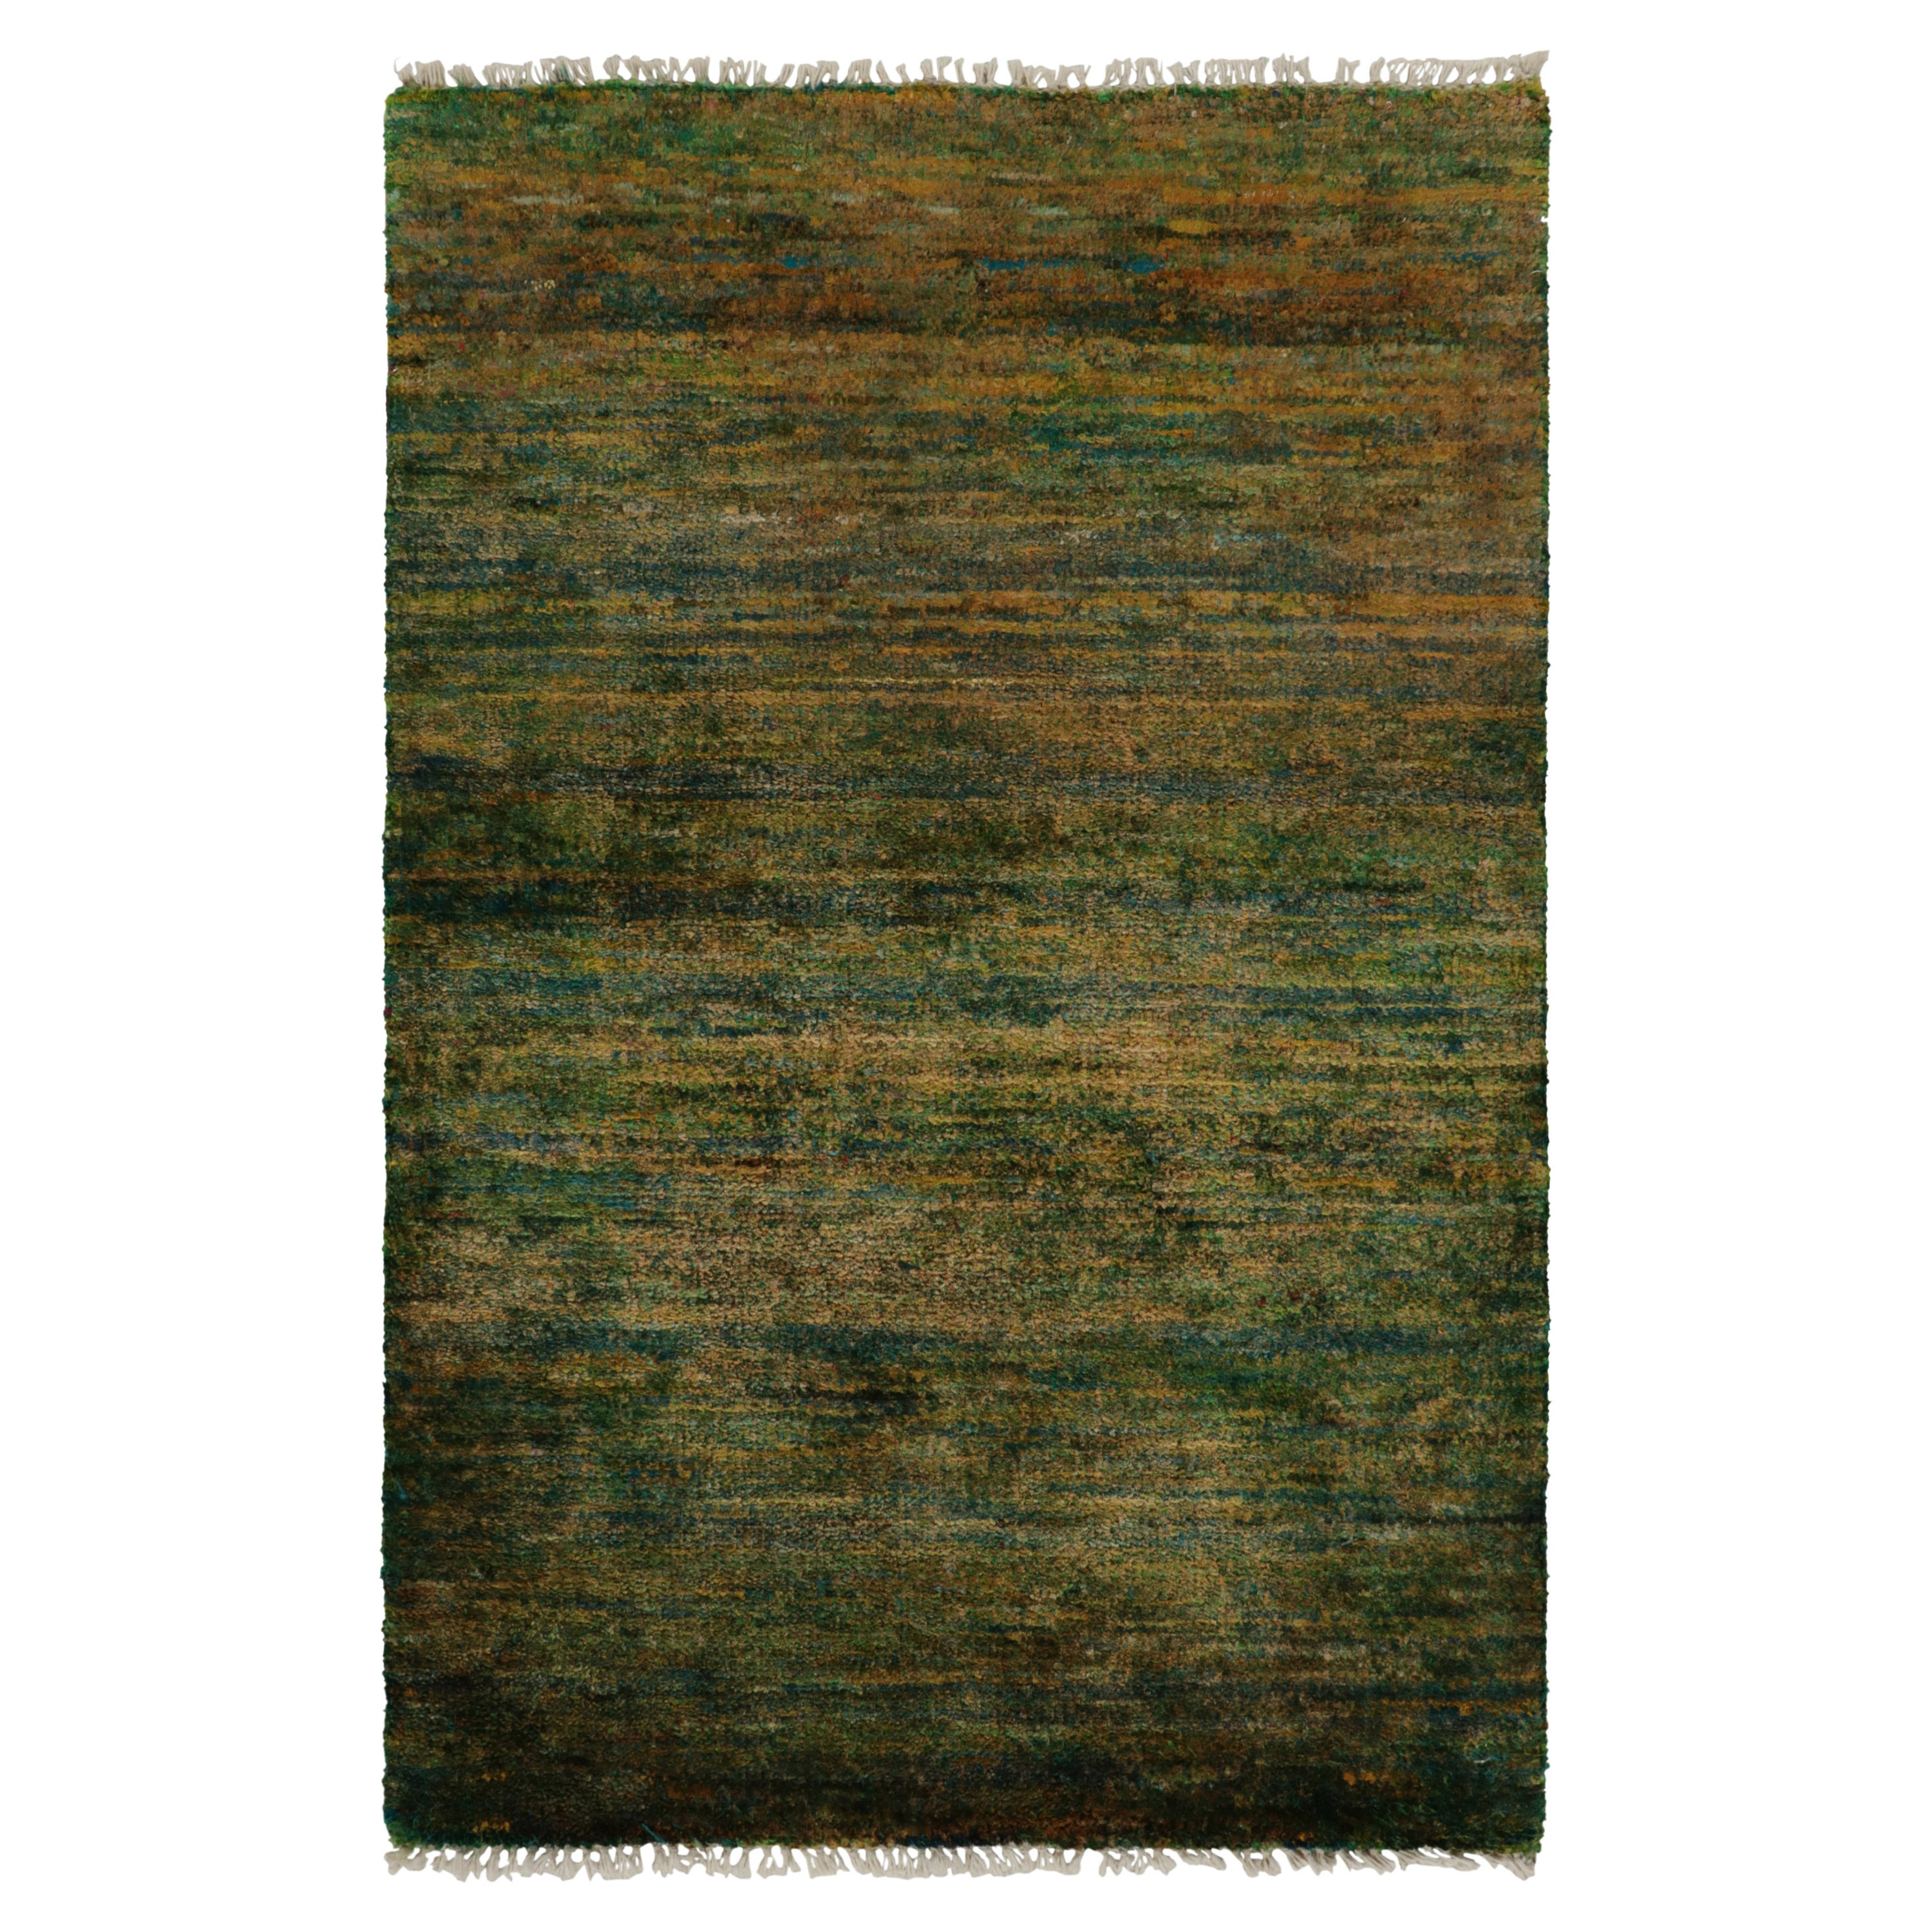 Rug & Kilim präsentiert seine raffinierte Interpretation moderner Ästhetik mit diesem eleganten, unifarbenen 2x3-Teppich aus unserer Texture of Color-Kollektion. Das zeitgenössische Stück schwelgt in einer verjüngenden und doch üppigen Farbgebung